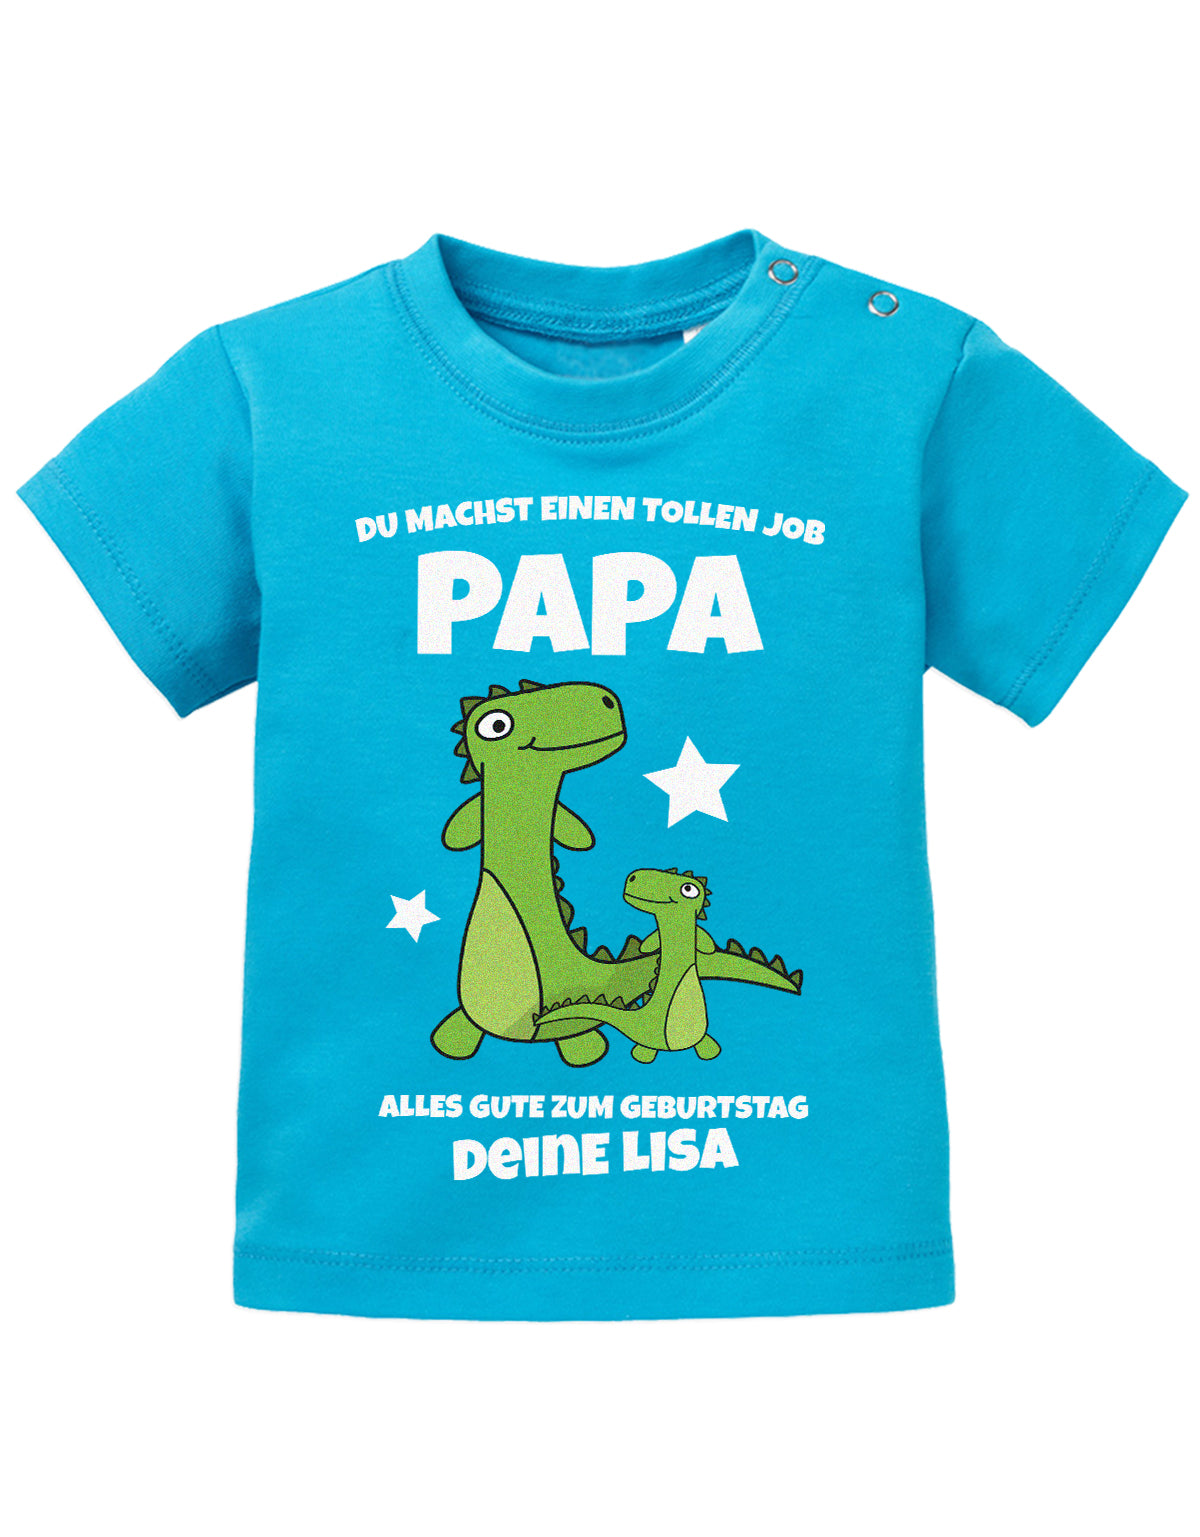 Papa Spruch Baby Shirt. Du machst einen tollen Job, Papa. Alles Gute zum Geburtstag. Personalisiert mit Namen. Blau